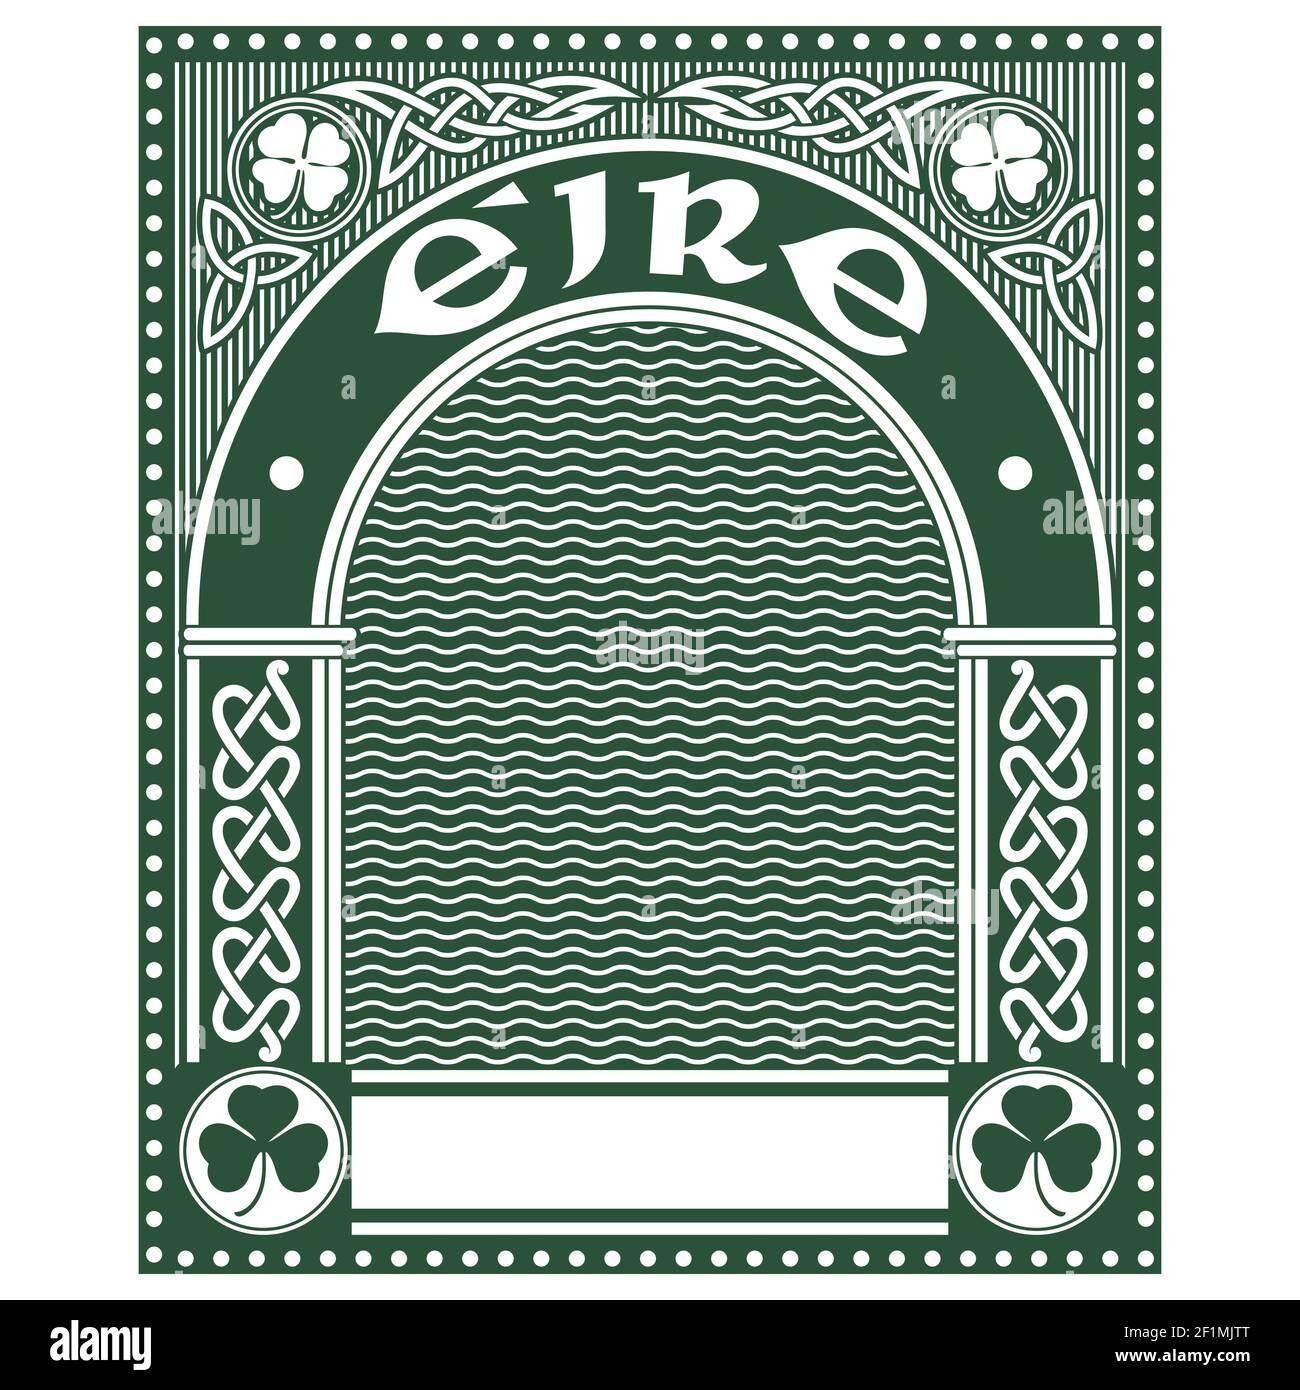 Irish Celtic Design im Vintage, Retro-Stil, Celtic-Stil Klee, Illustration zum Thema St. Patricks Day Feier Stock Vektor